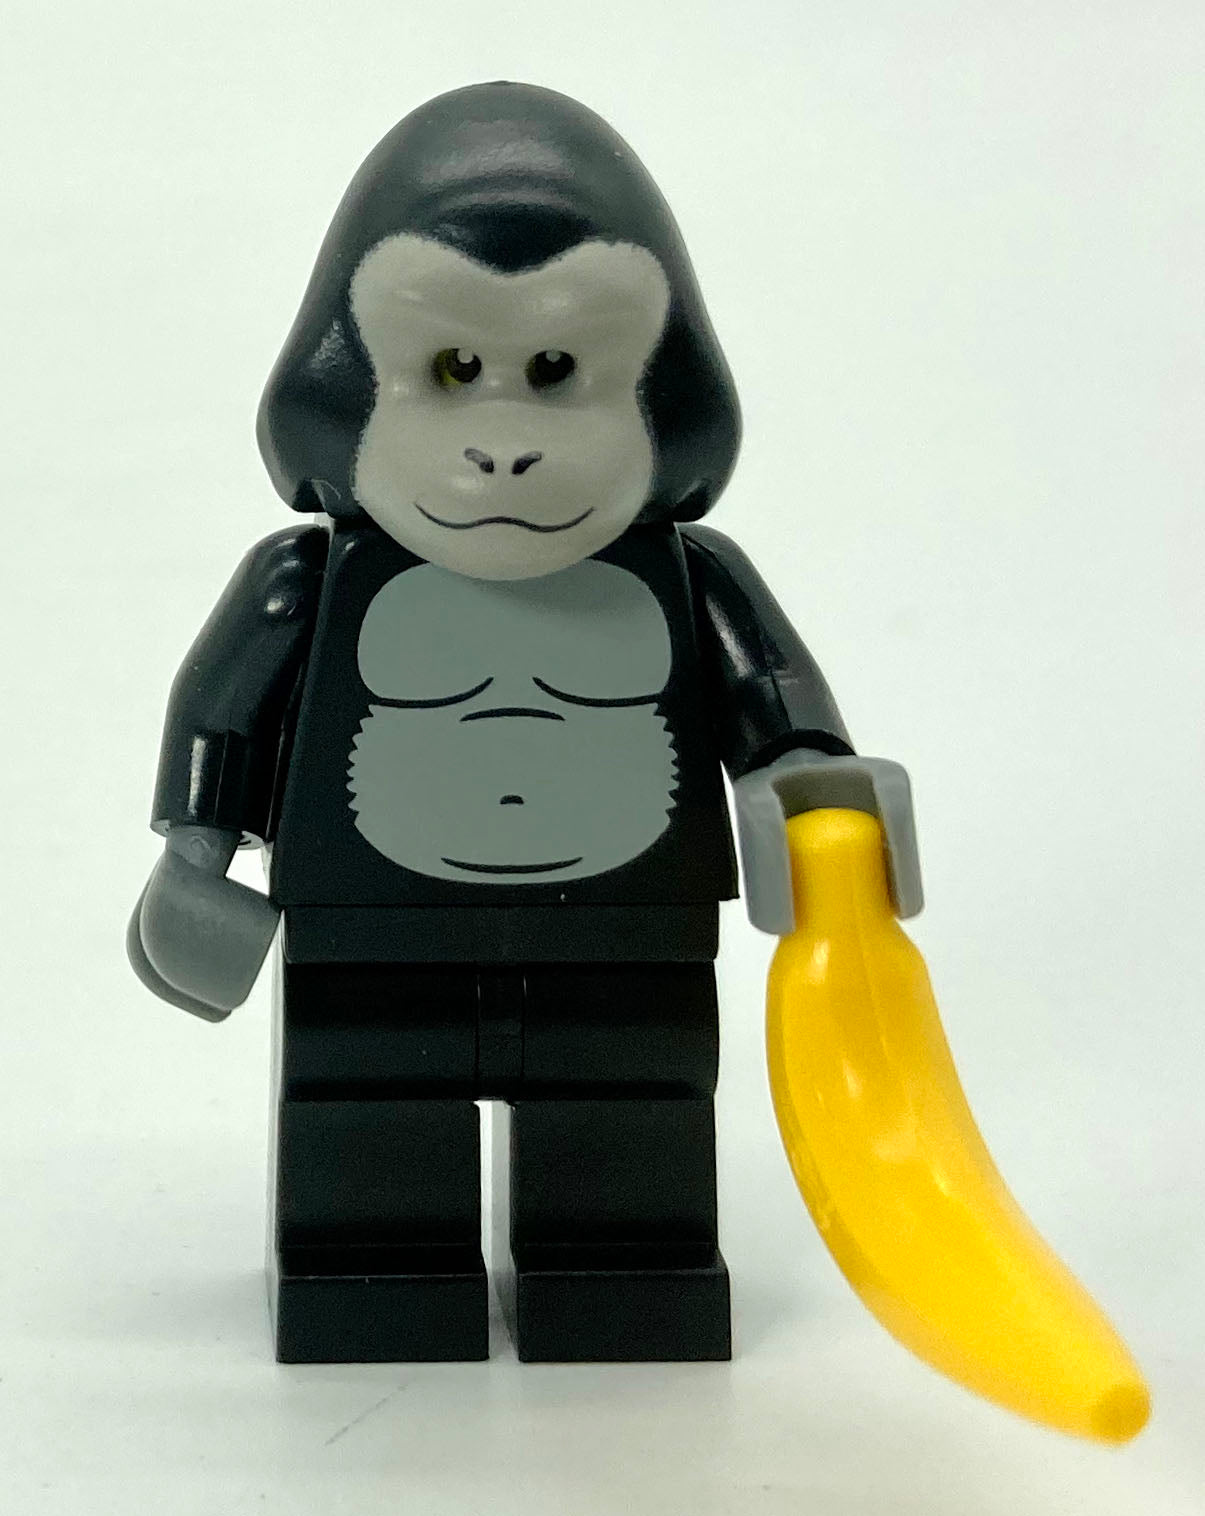 Series 03 - Gorilla Suit Guy